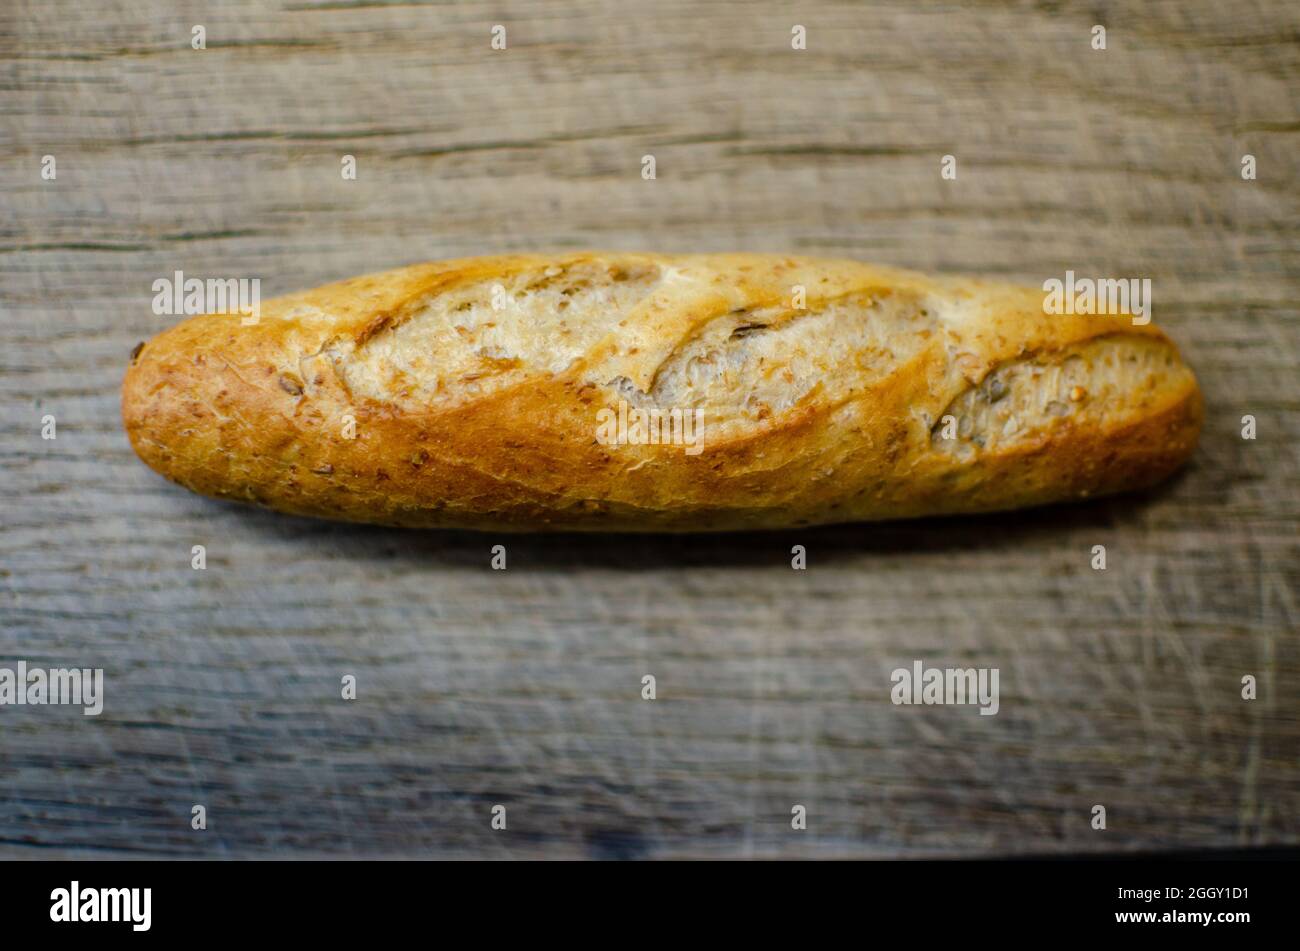 freshly baked bread on an oak cutting board Stock Photo